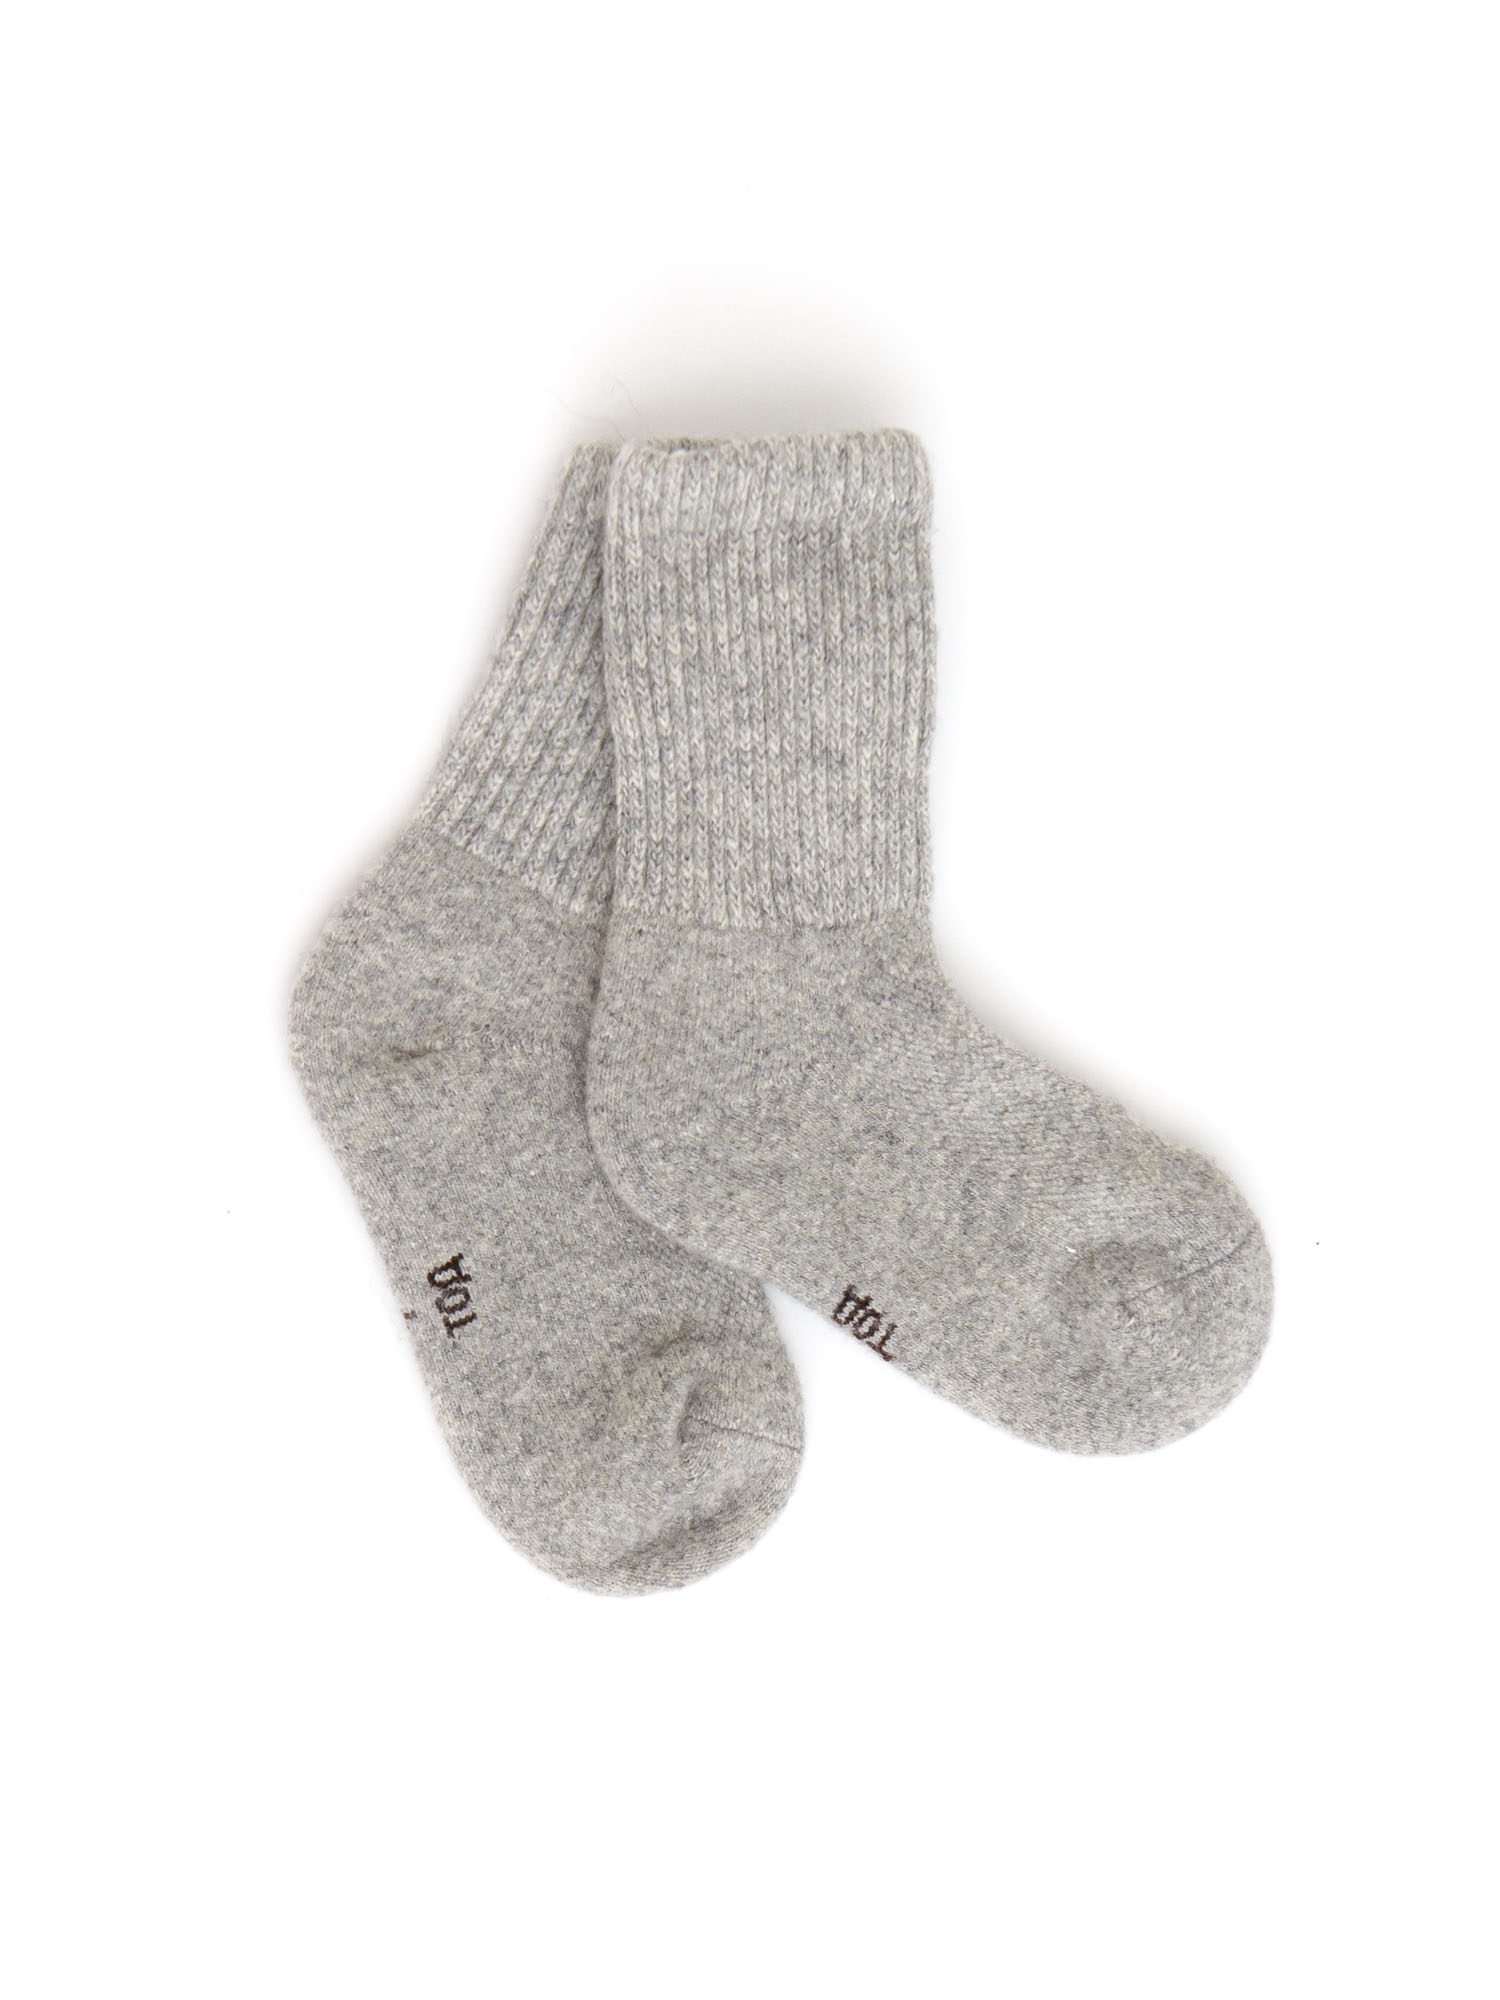 Детские носки из монгольской шерсти 5с ТОД ОЙМС ХХК, цвет серый, размер 5 (18-20 см) - фото 1